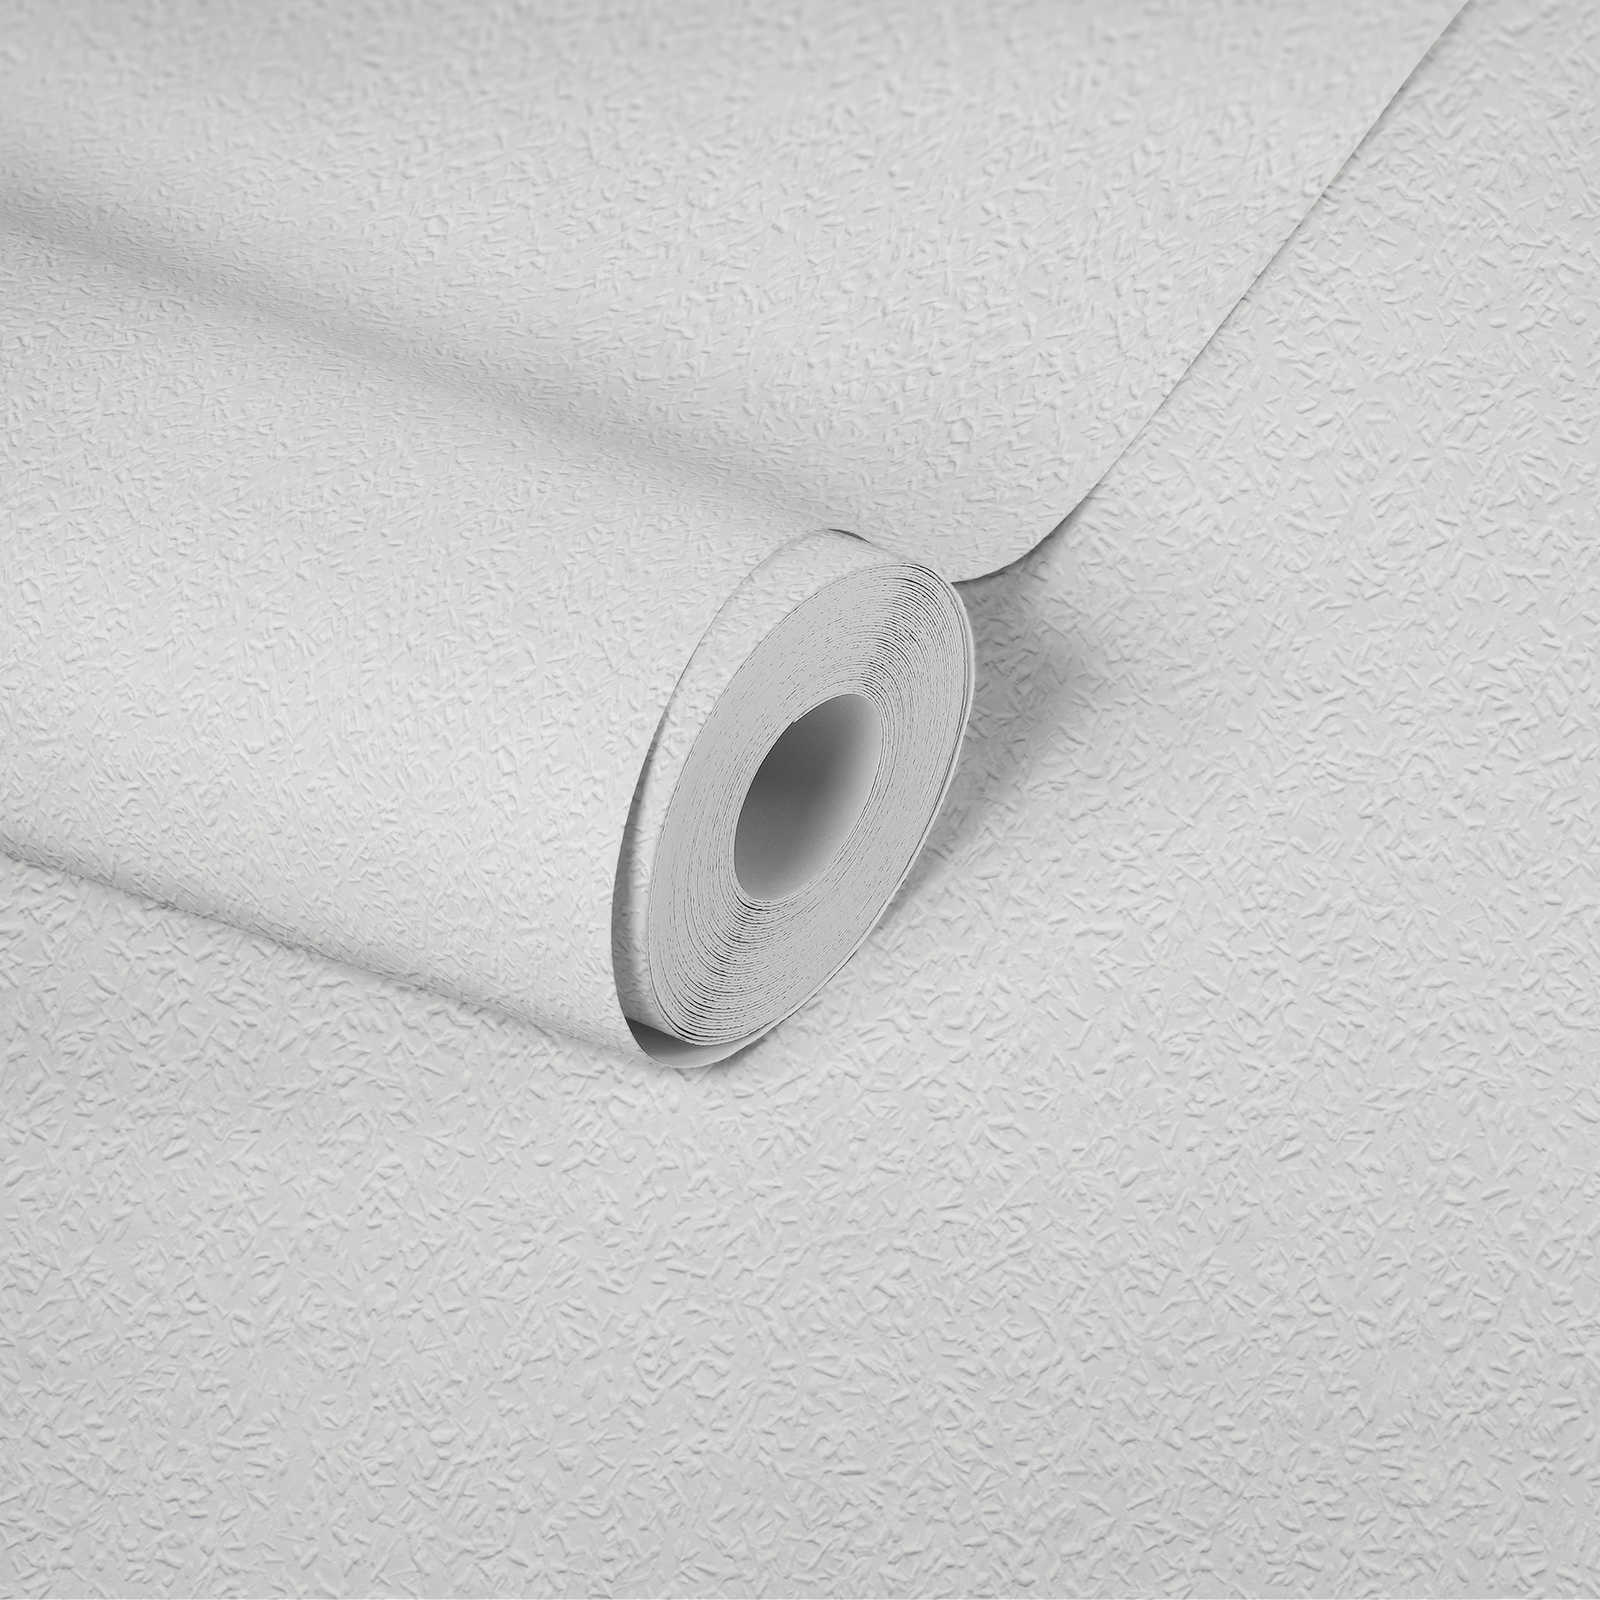             Carta da parati in tessuto non tessuto con effetto legno - verniciabile, bianco
        